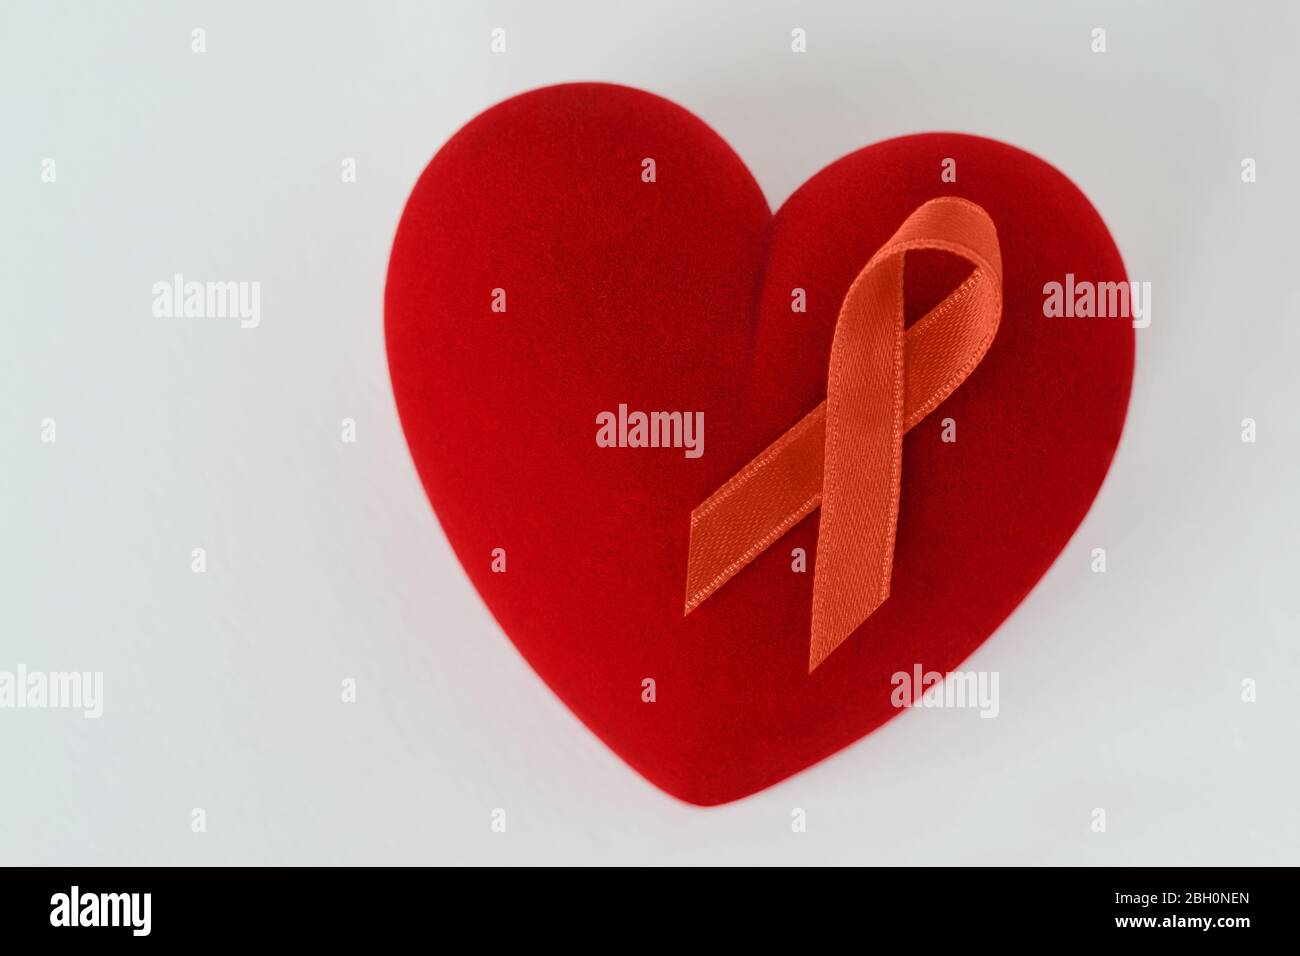 Herz mit orangefarbenem Band auf weißem Hintergrund - Konzept der Leukämie Bewusstsein, Nierenkrebs Assoziation, Multiple Sklerose und Tiermissbrauch Stockfoto